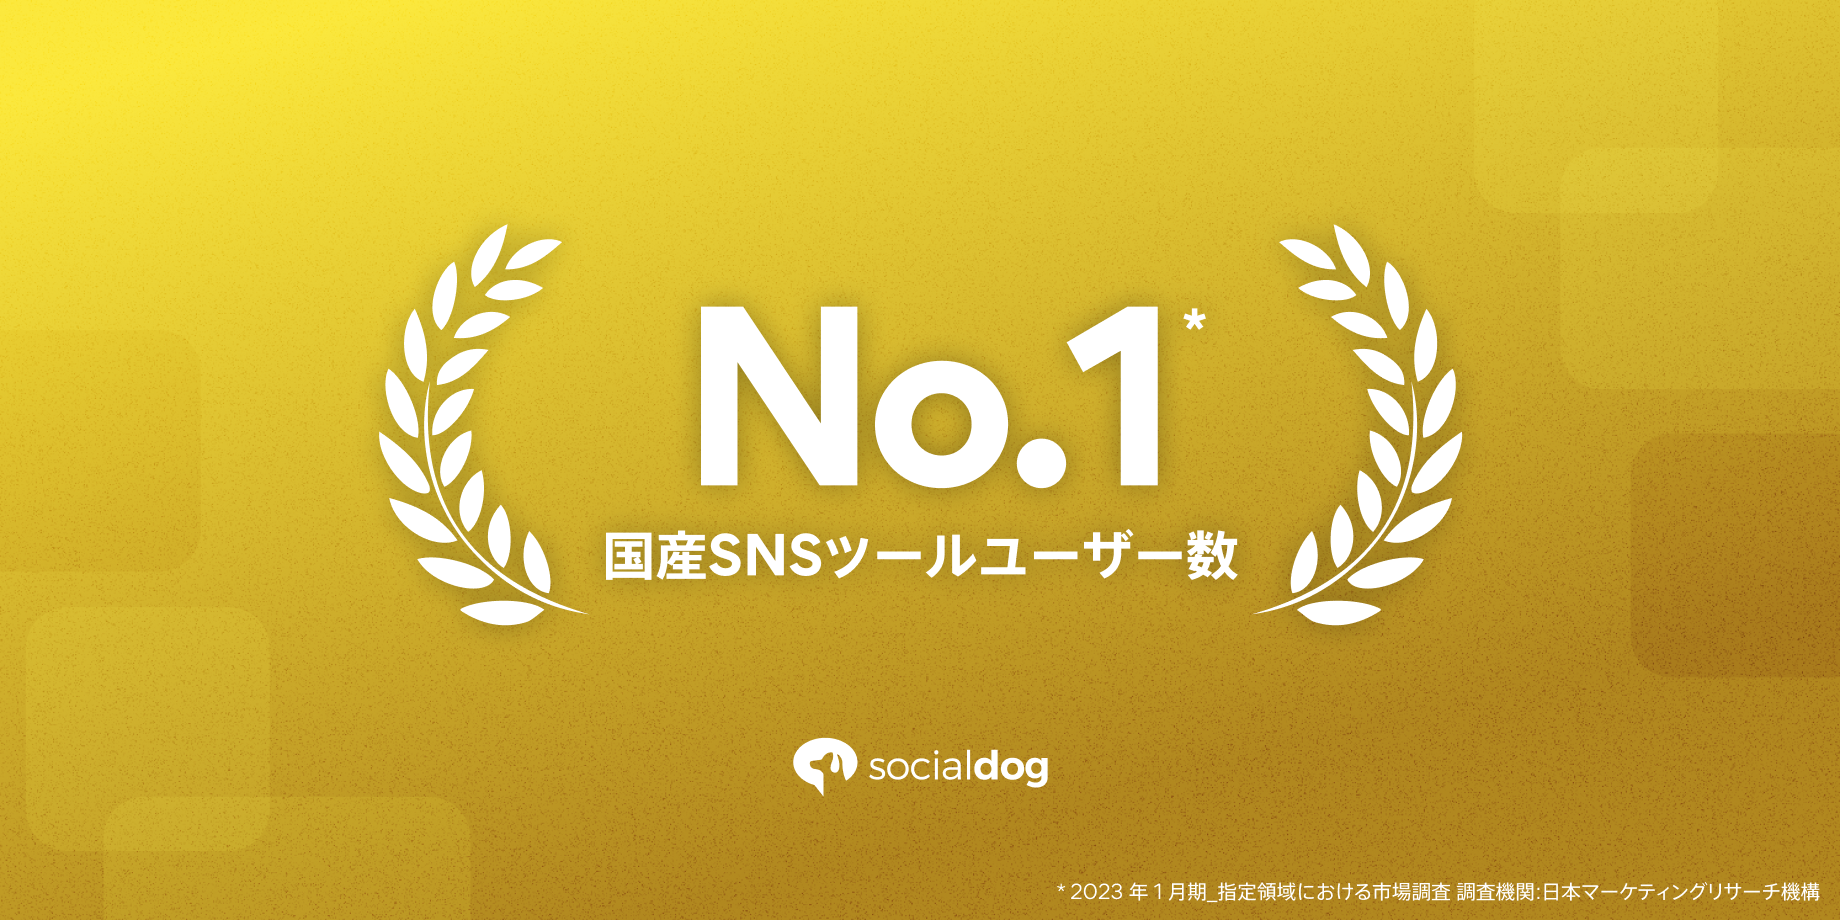 Twitter アカウント管理ツール「SocialDog」、国産SNSツールとしてユーザー数 No.1を獲得